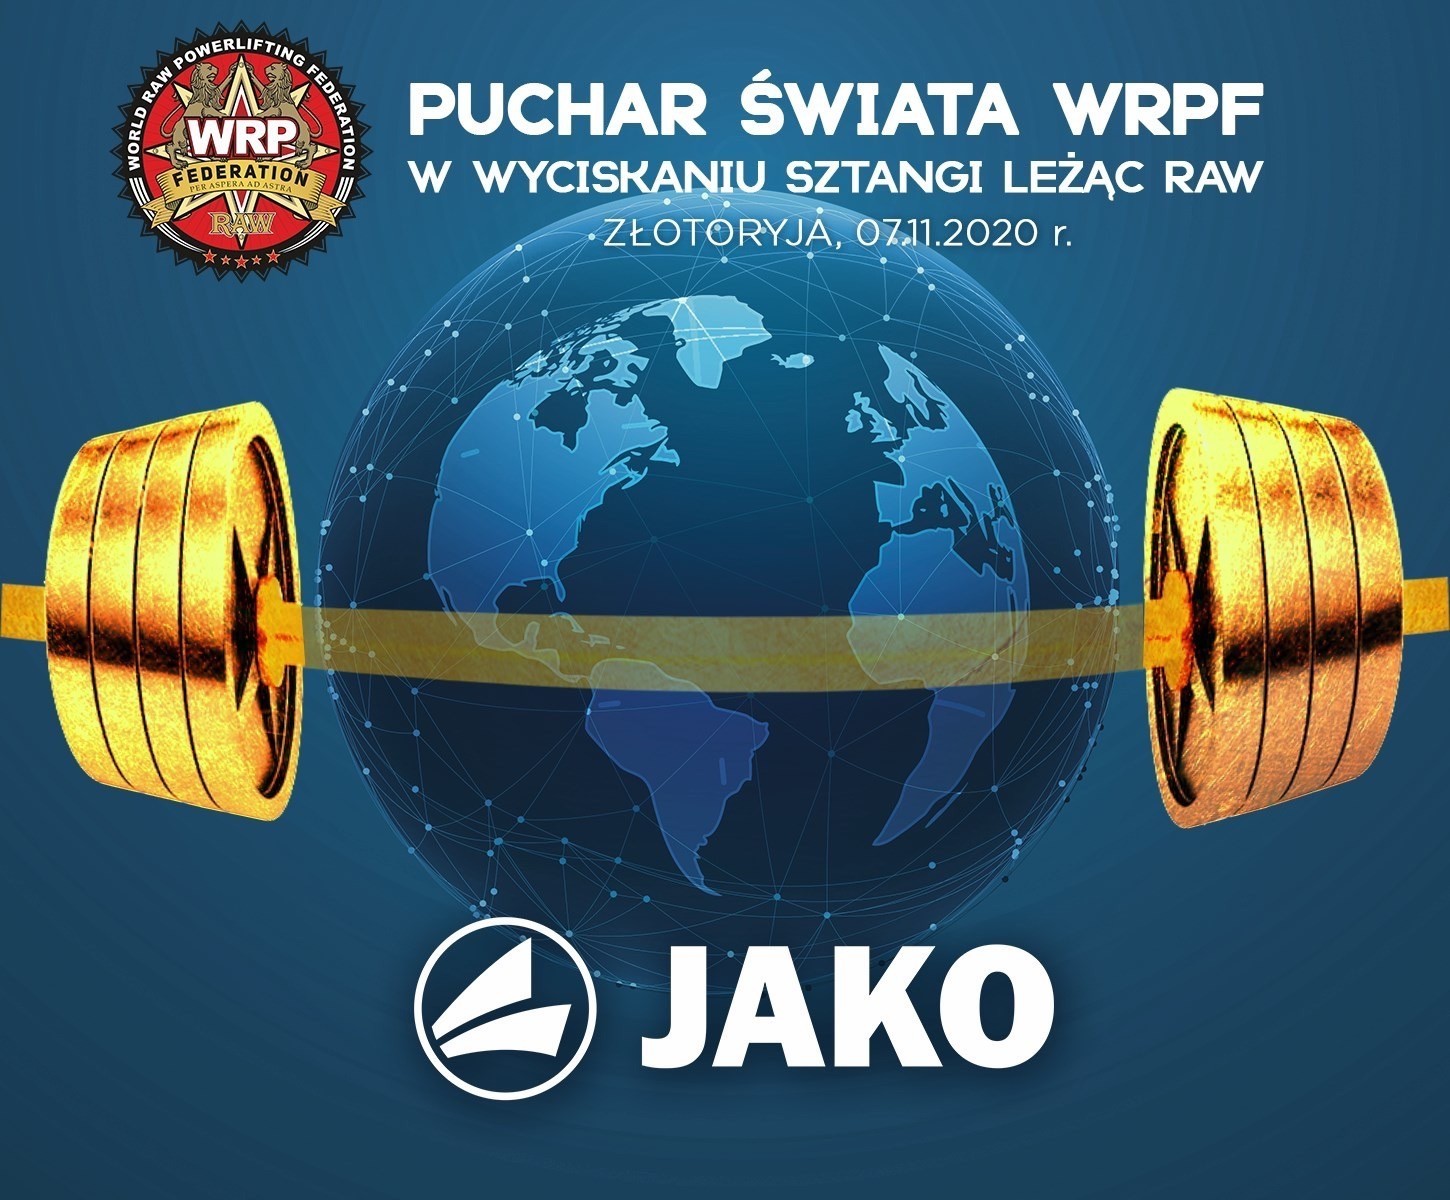 Кубок мира по жиму лежа по версии WRPF, Польша / Злоторыая, 07.11.2020